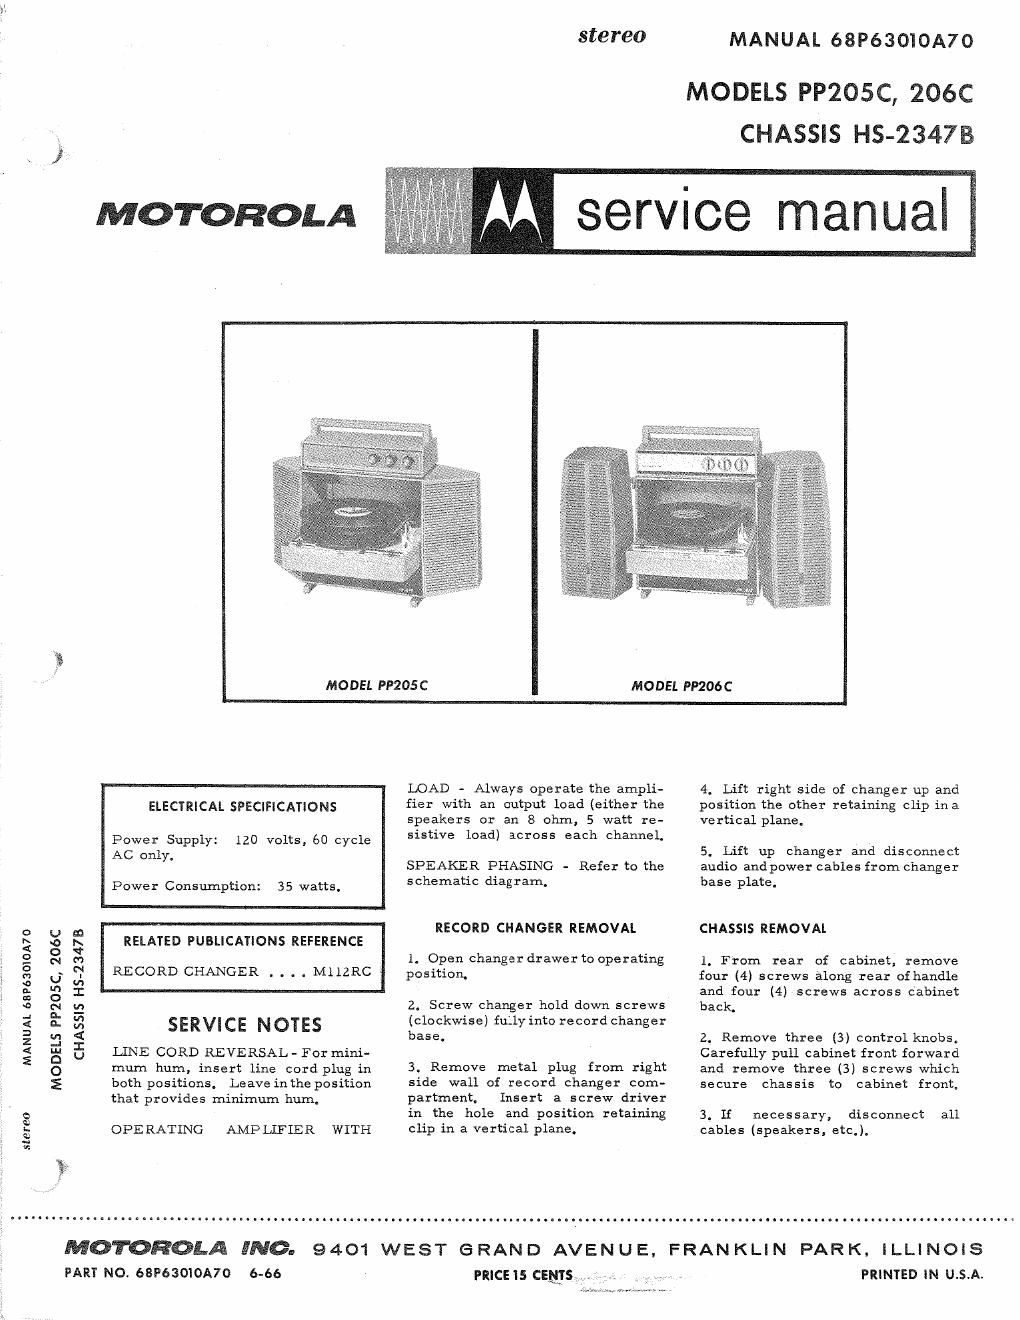 motorola pp 206 c service manual